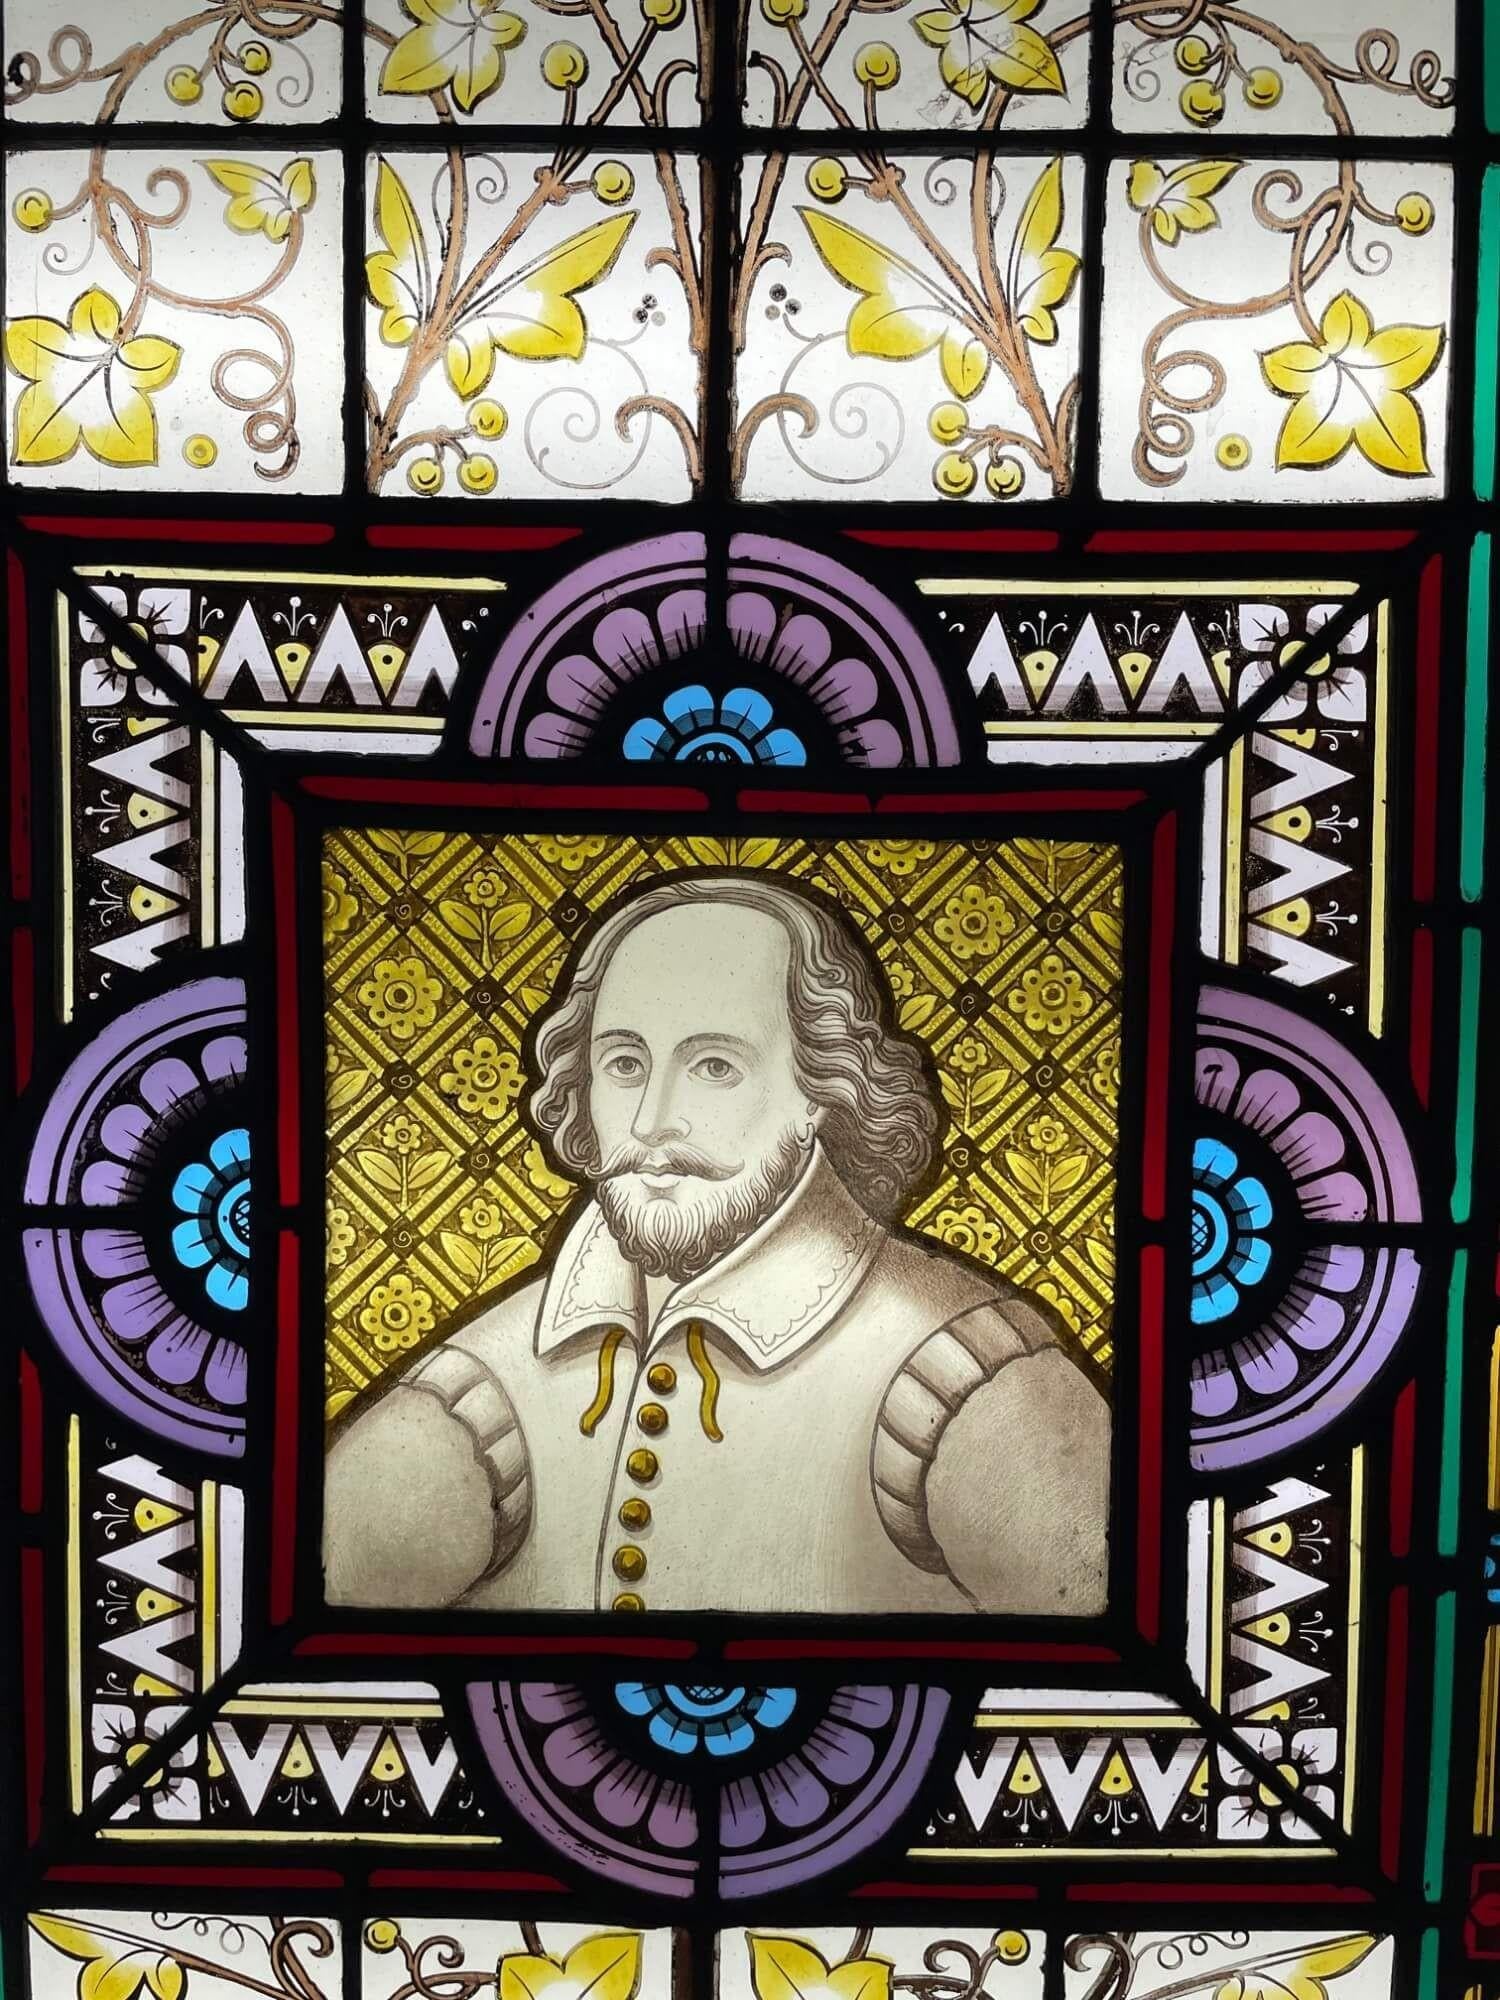 Un panneau de vitrail ancien de la fin du 19e siècle représentant Shakespeare, l'un des trois panneaux similaires que nous vendons et qui représentent des personnages notables de l'histoire britannique. Au centre se trouve une illustration de